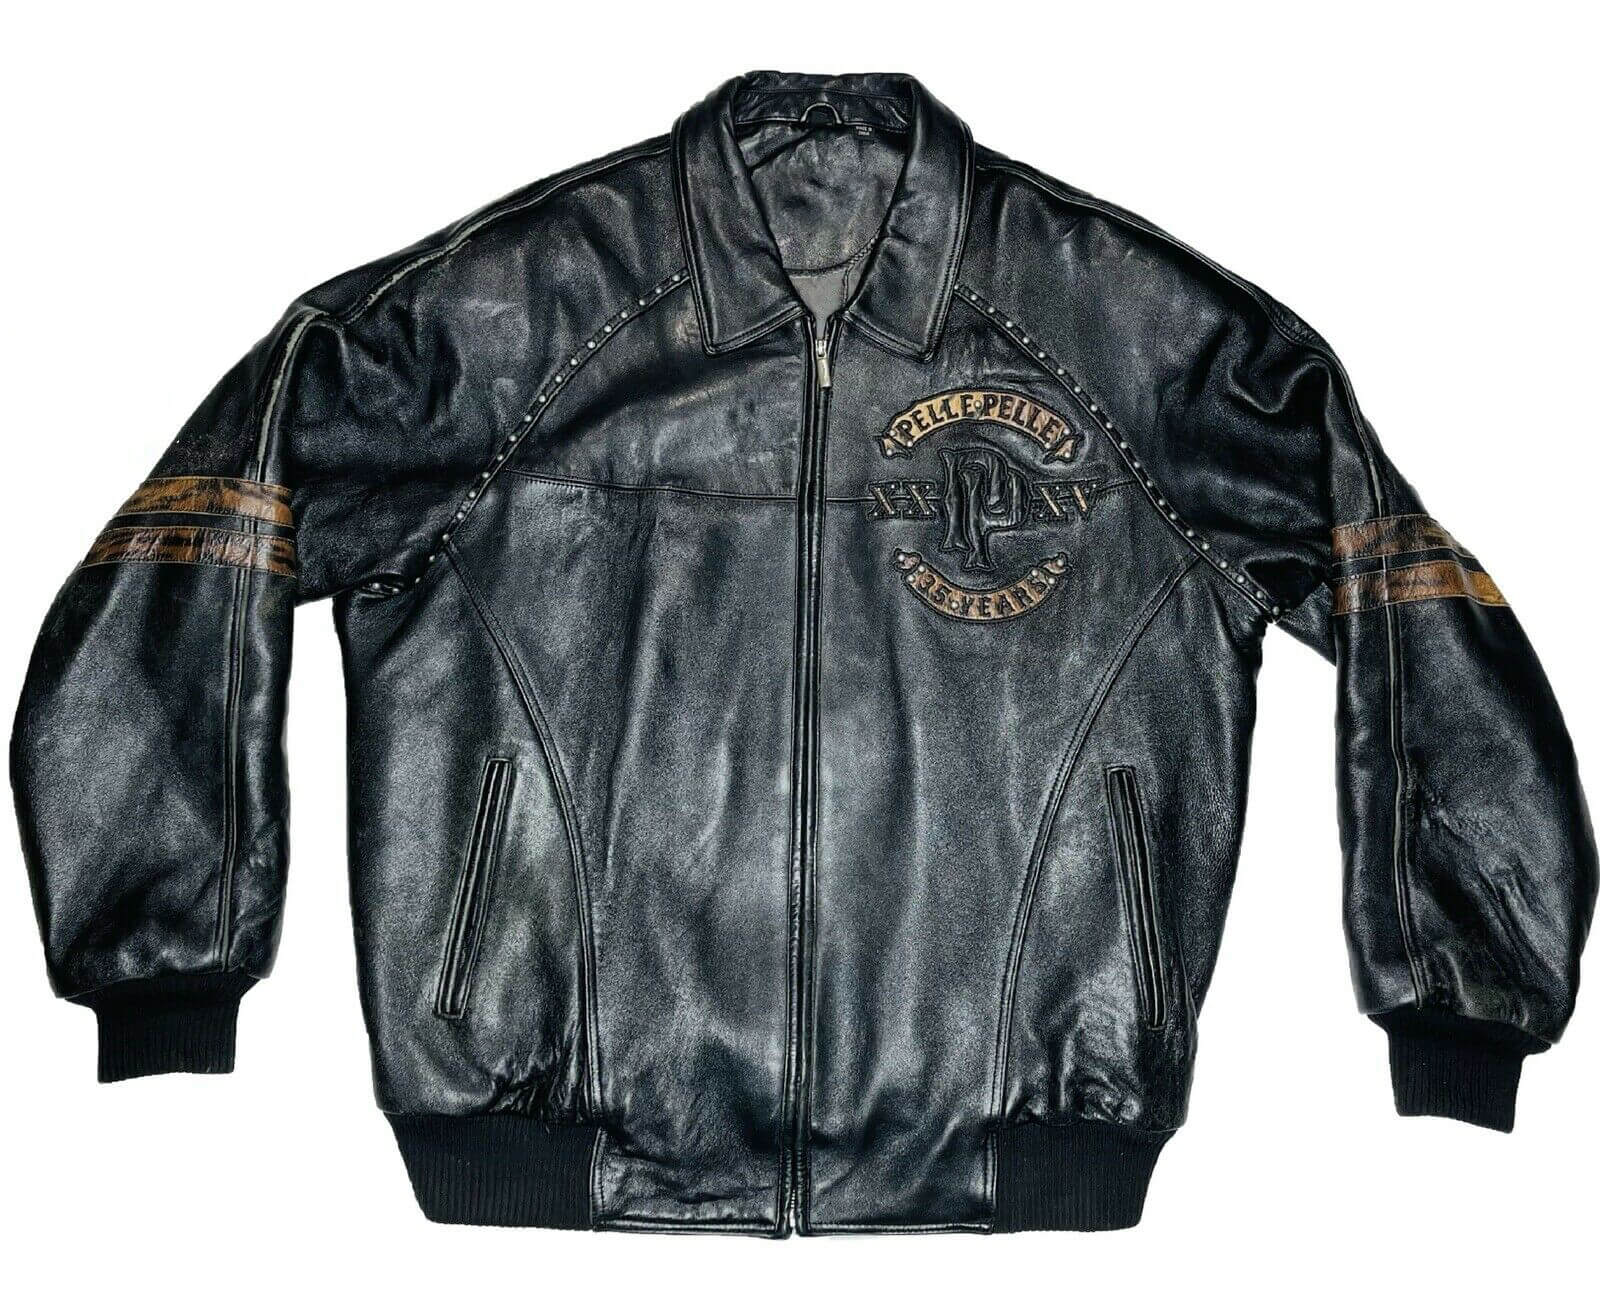 Pelle Pelle Studded Tiger Leather Jacket - Maker of Jacket